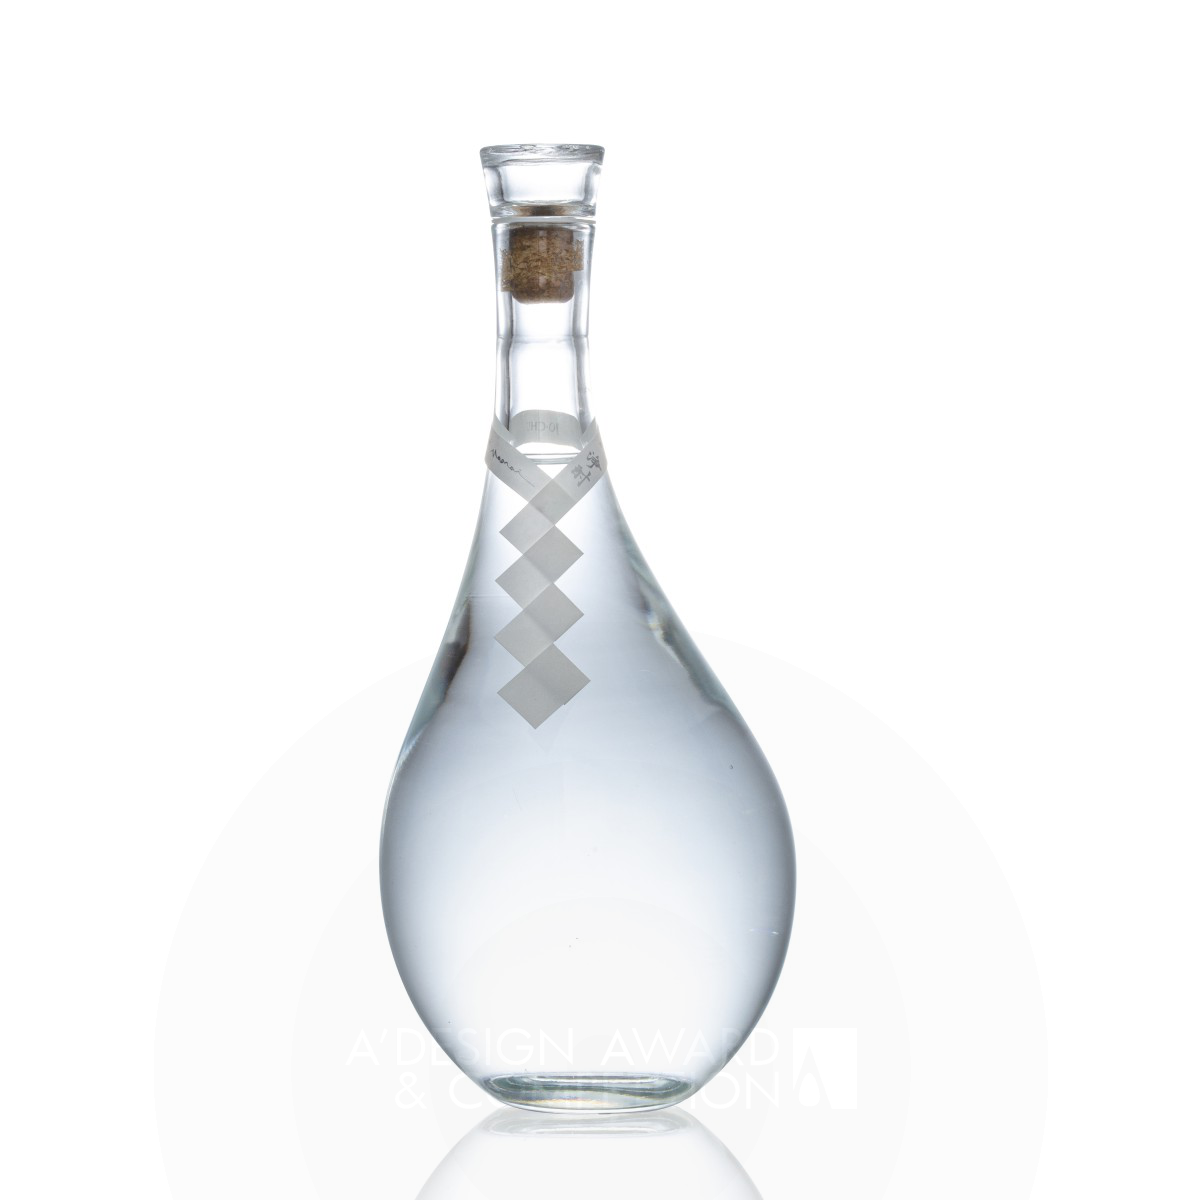 JO-CHU Sake Bottle by Eisuke Tachikawa